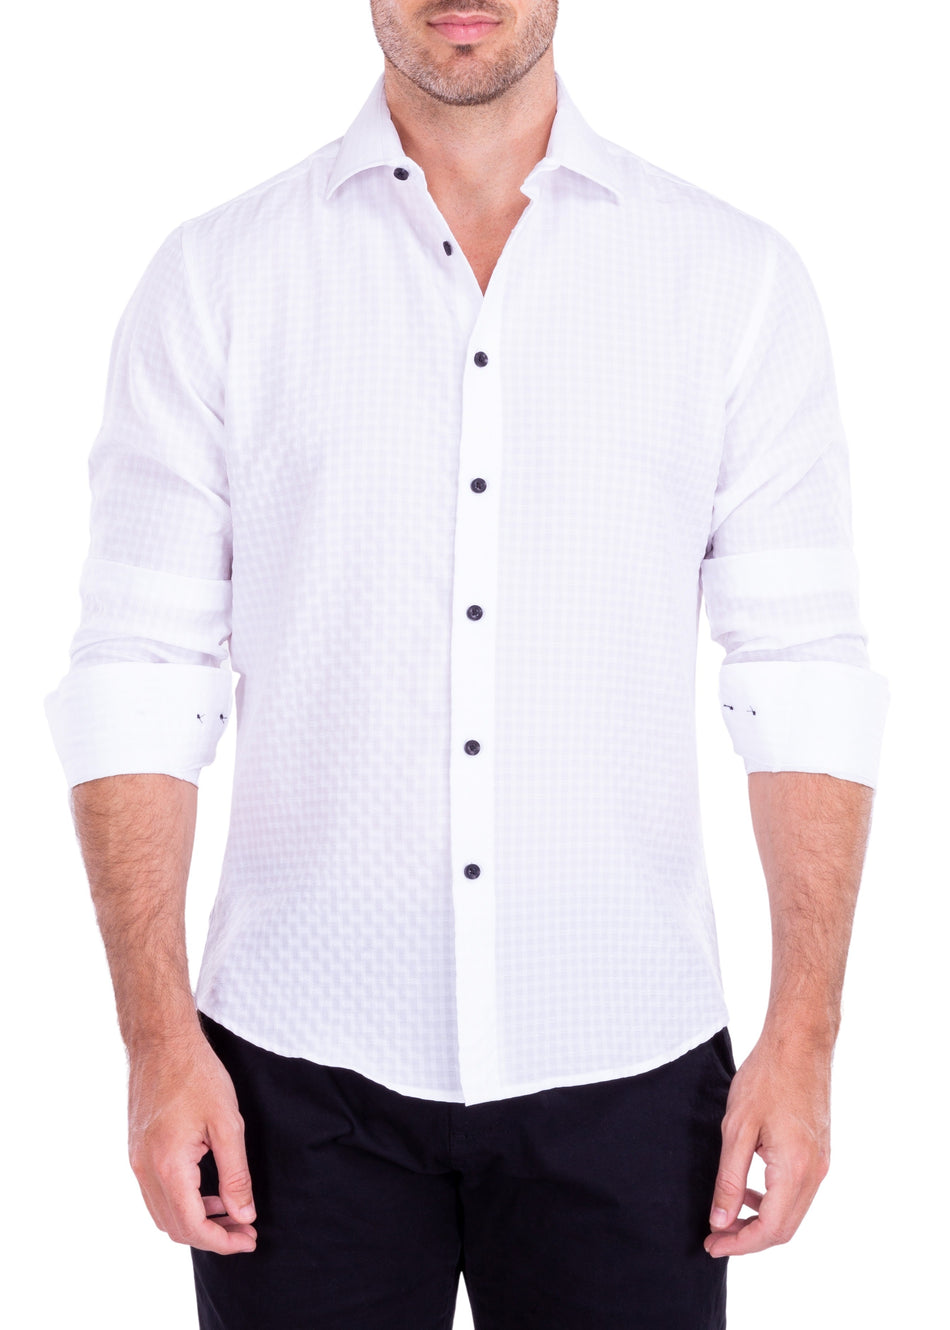 172510 - Men's White Button Up Long Sleeve Dress Shirt